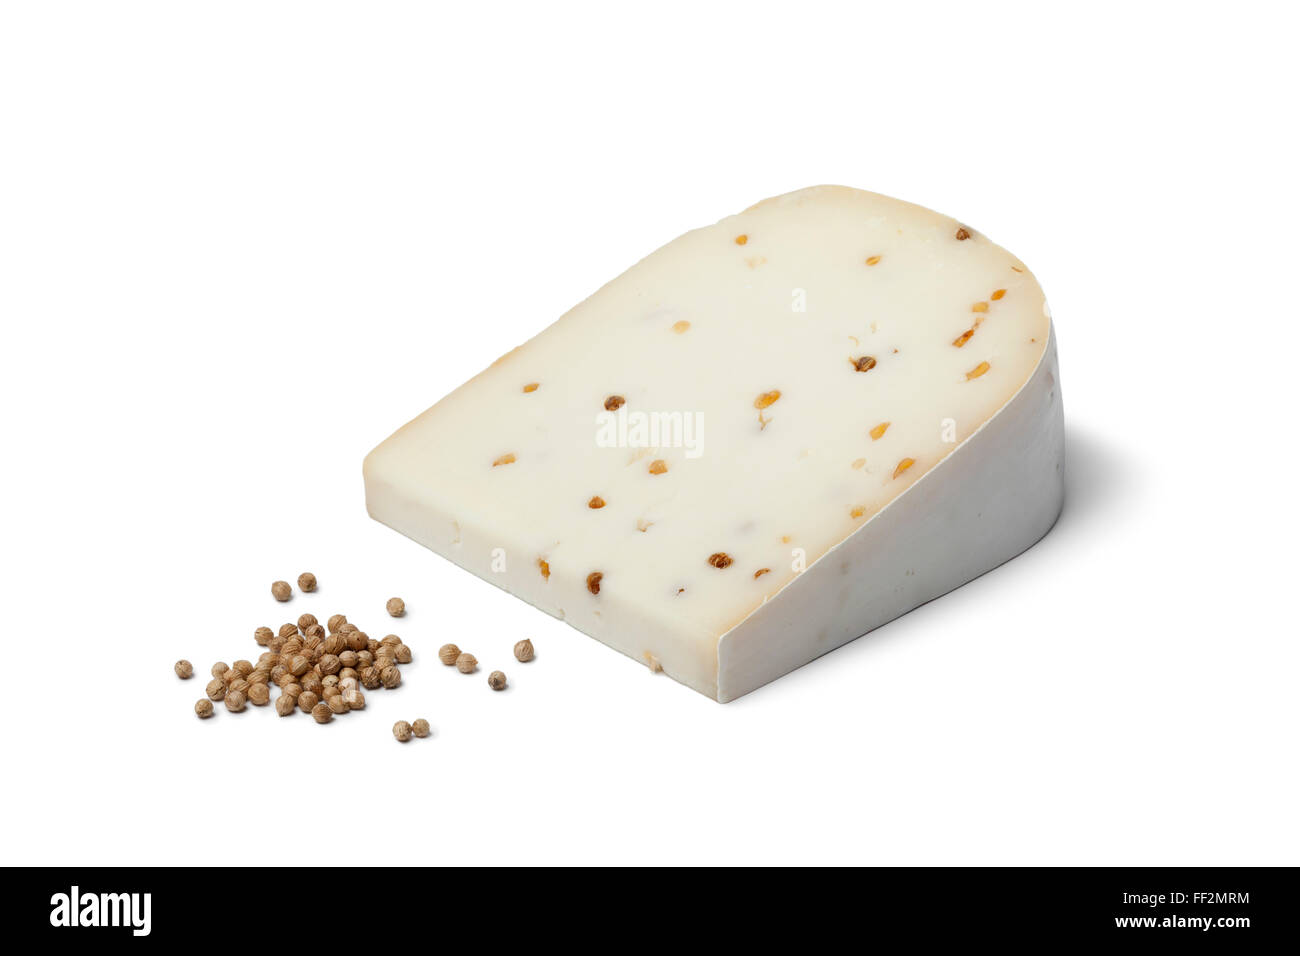 Morceau de fromage de chèvre avec les graines de coriandre sur fond blanc Banque D'Images